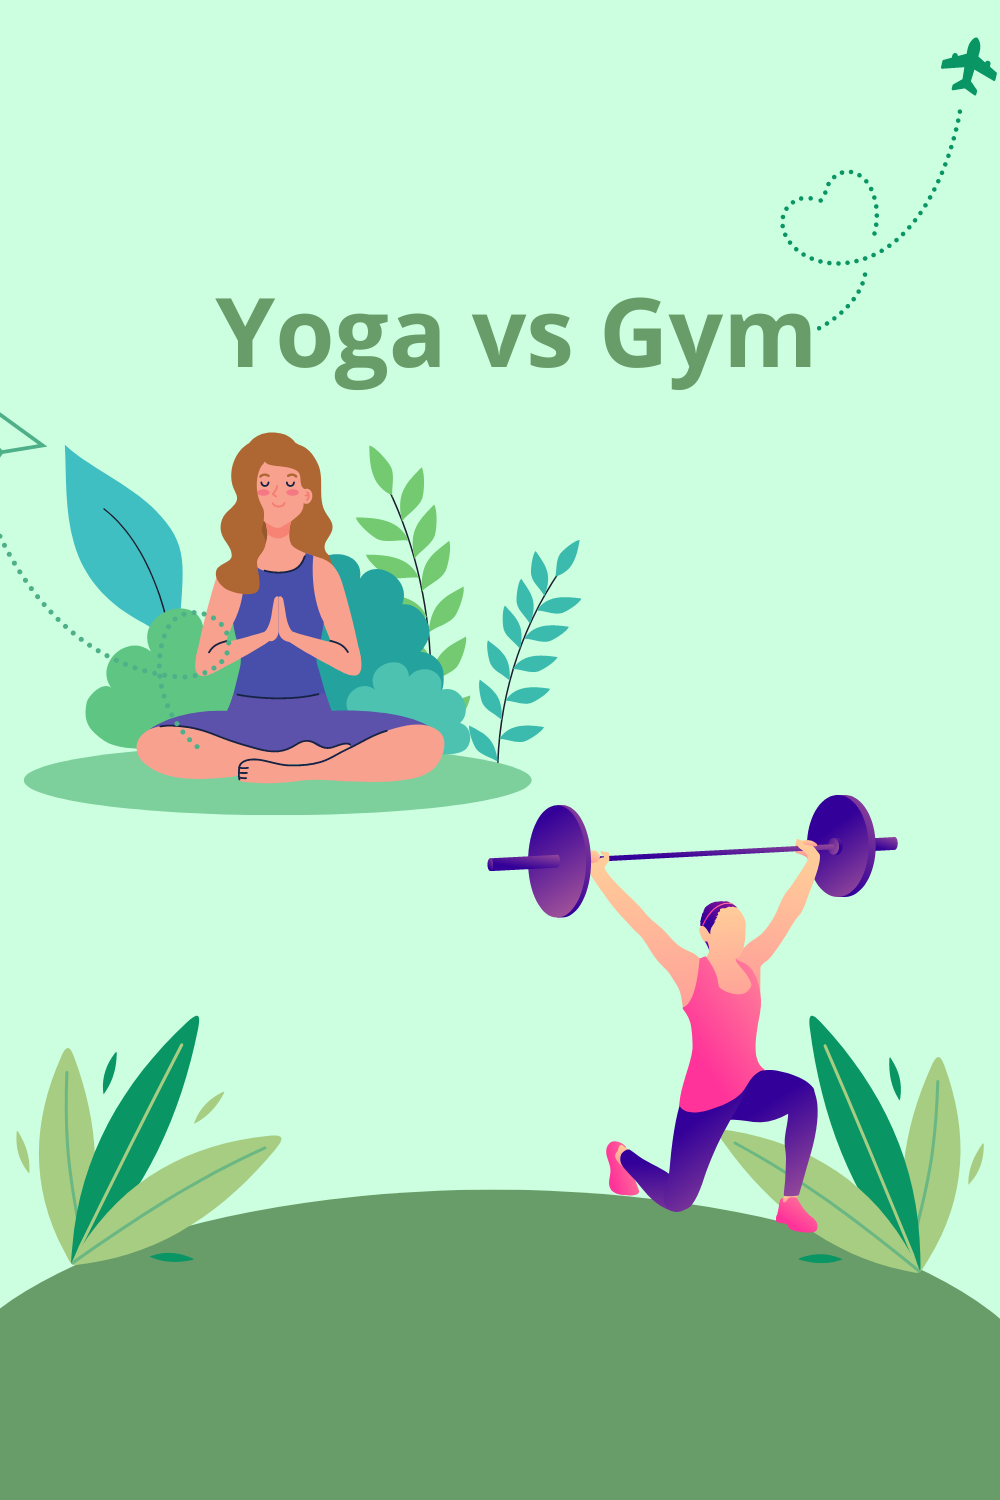 Yoga vs Gym